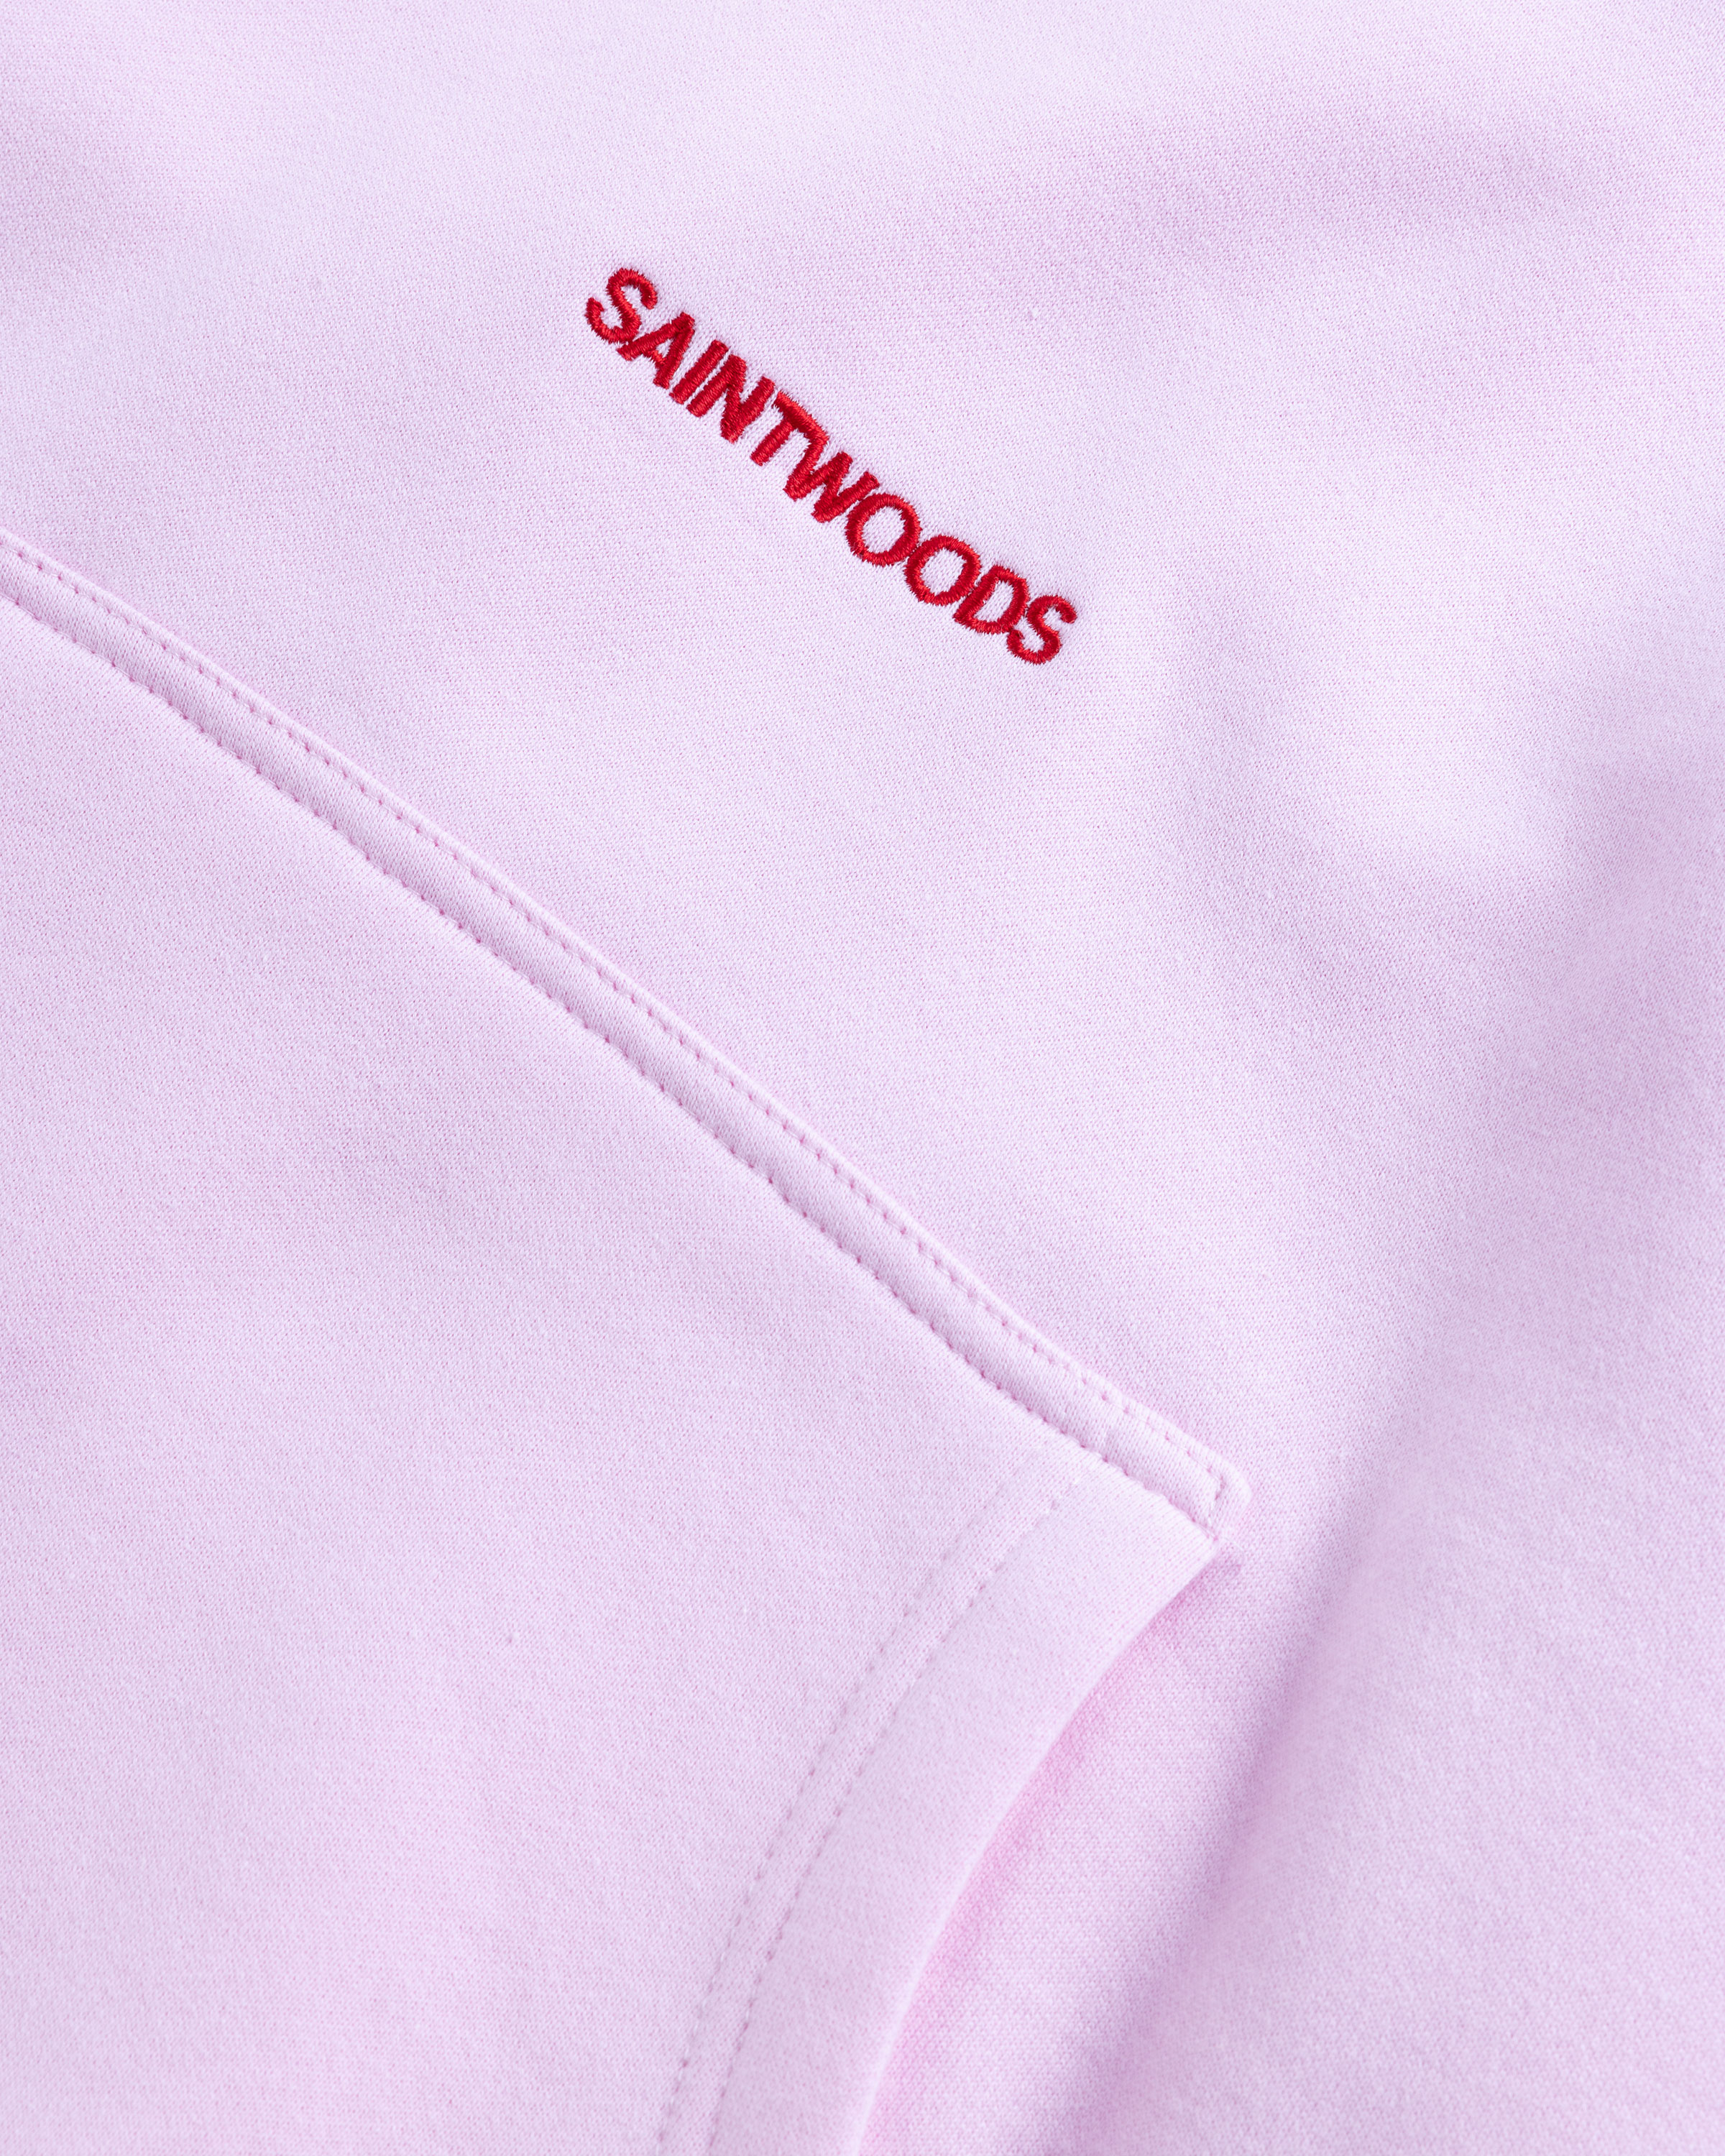 Saintwoods - SW Logo Hoodie Pink - Clothing - Pink - Image 7